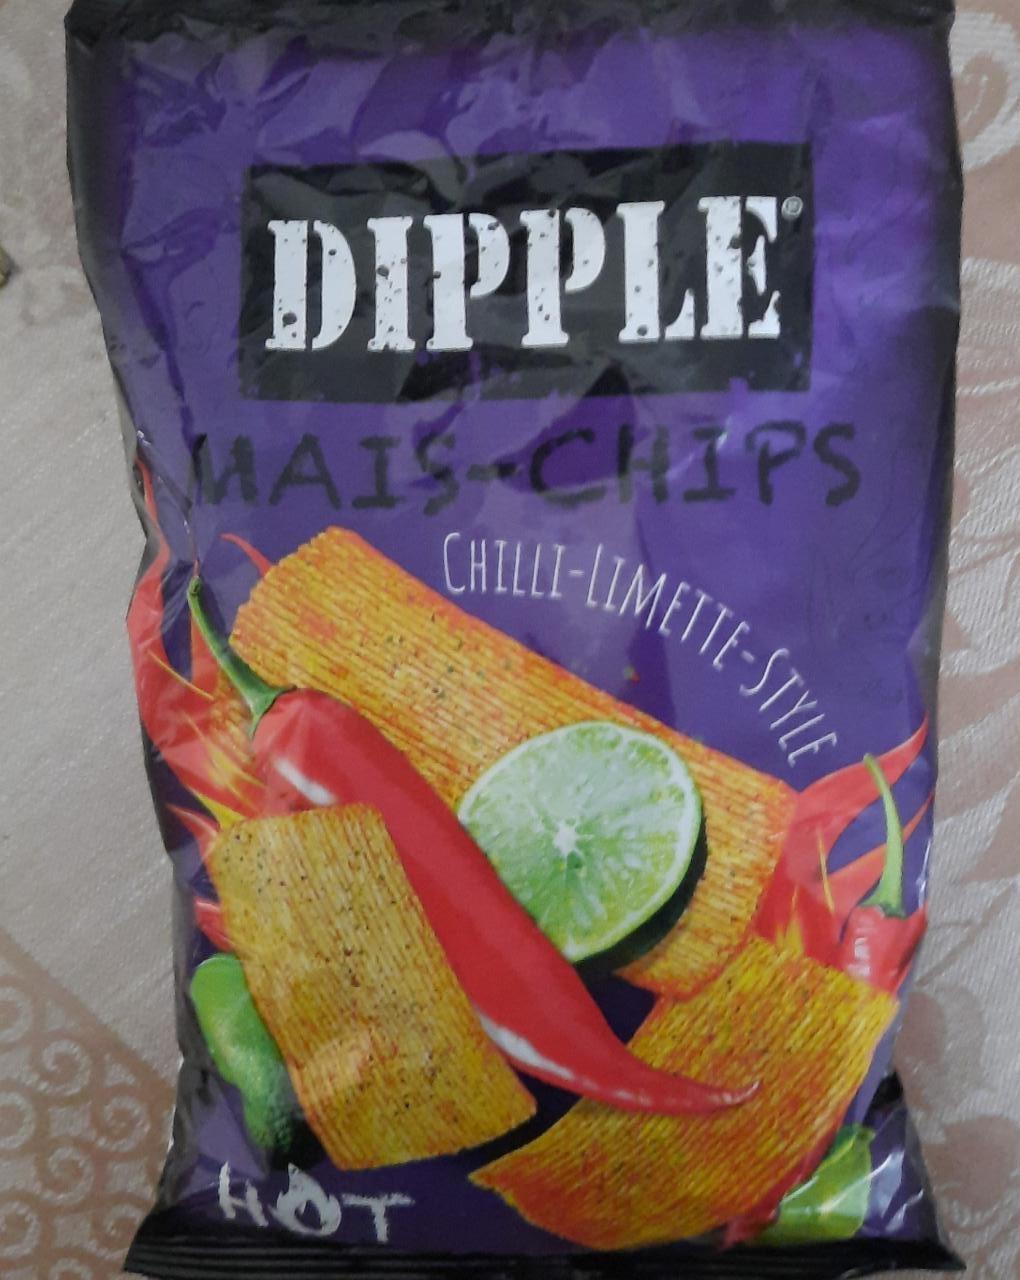 Fotografie - Mais-chips chilli-limette-style Dipple